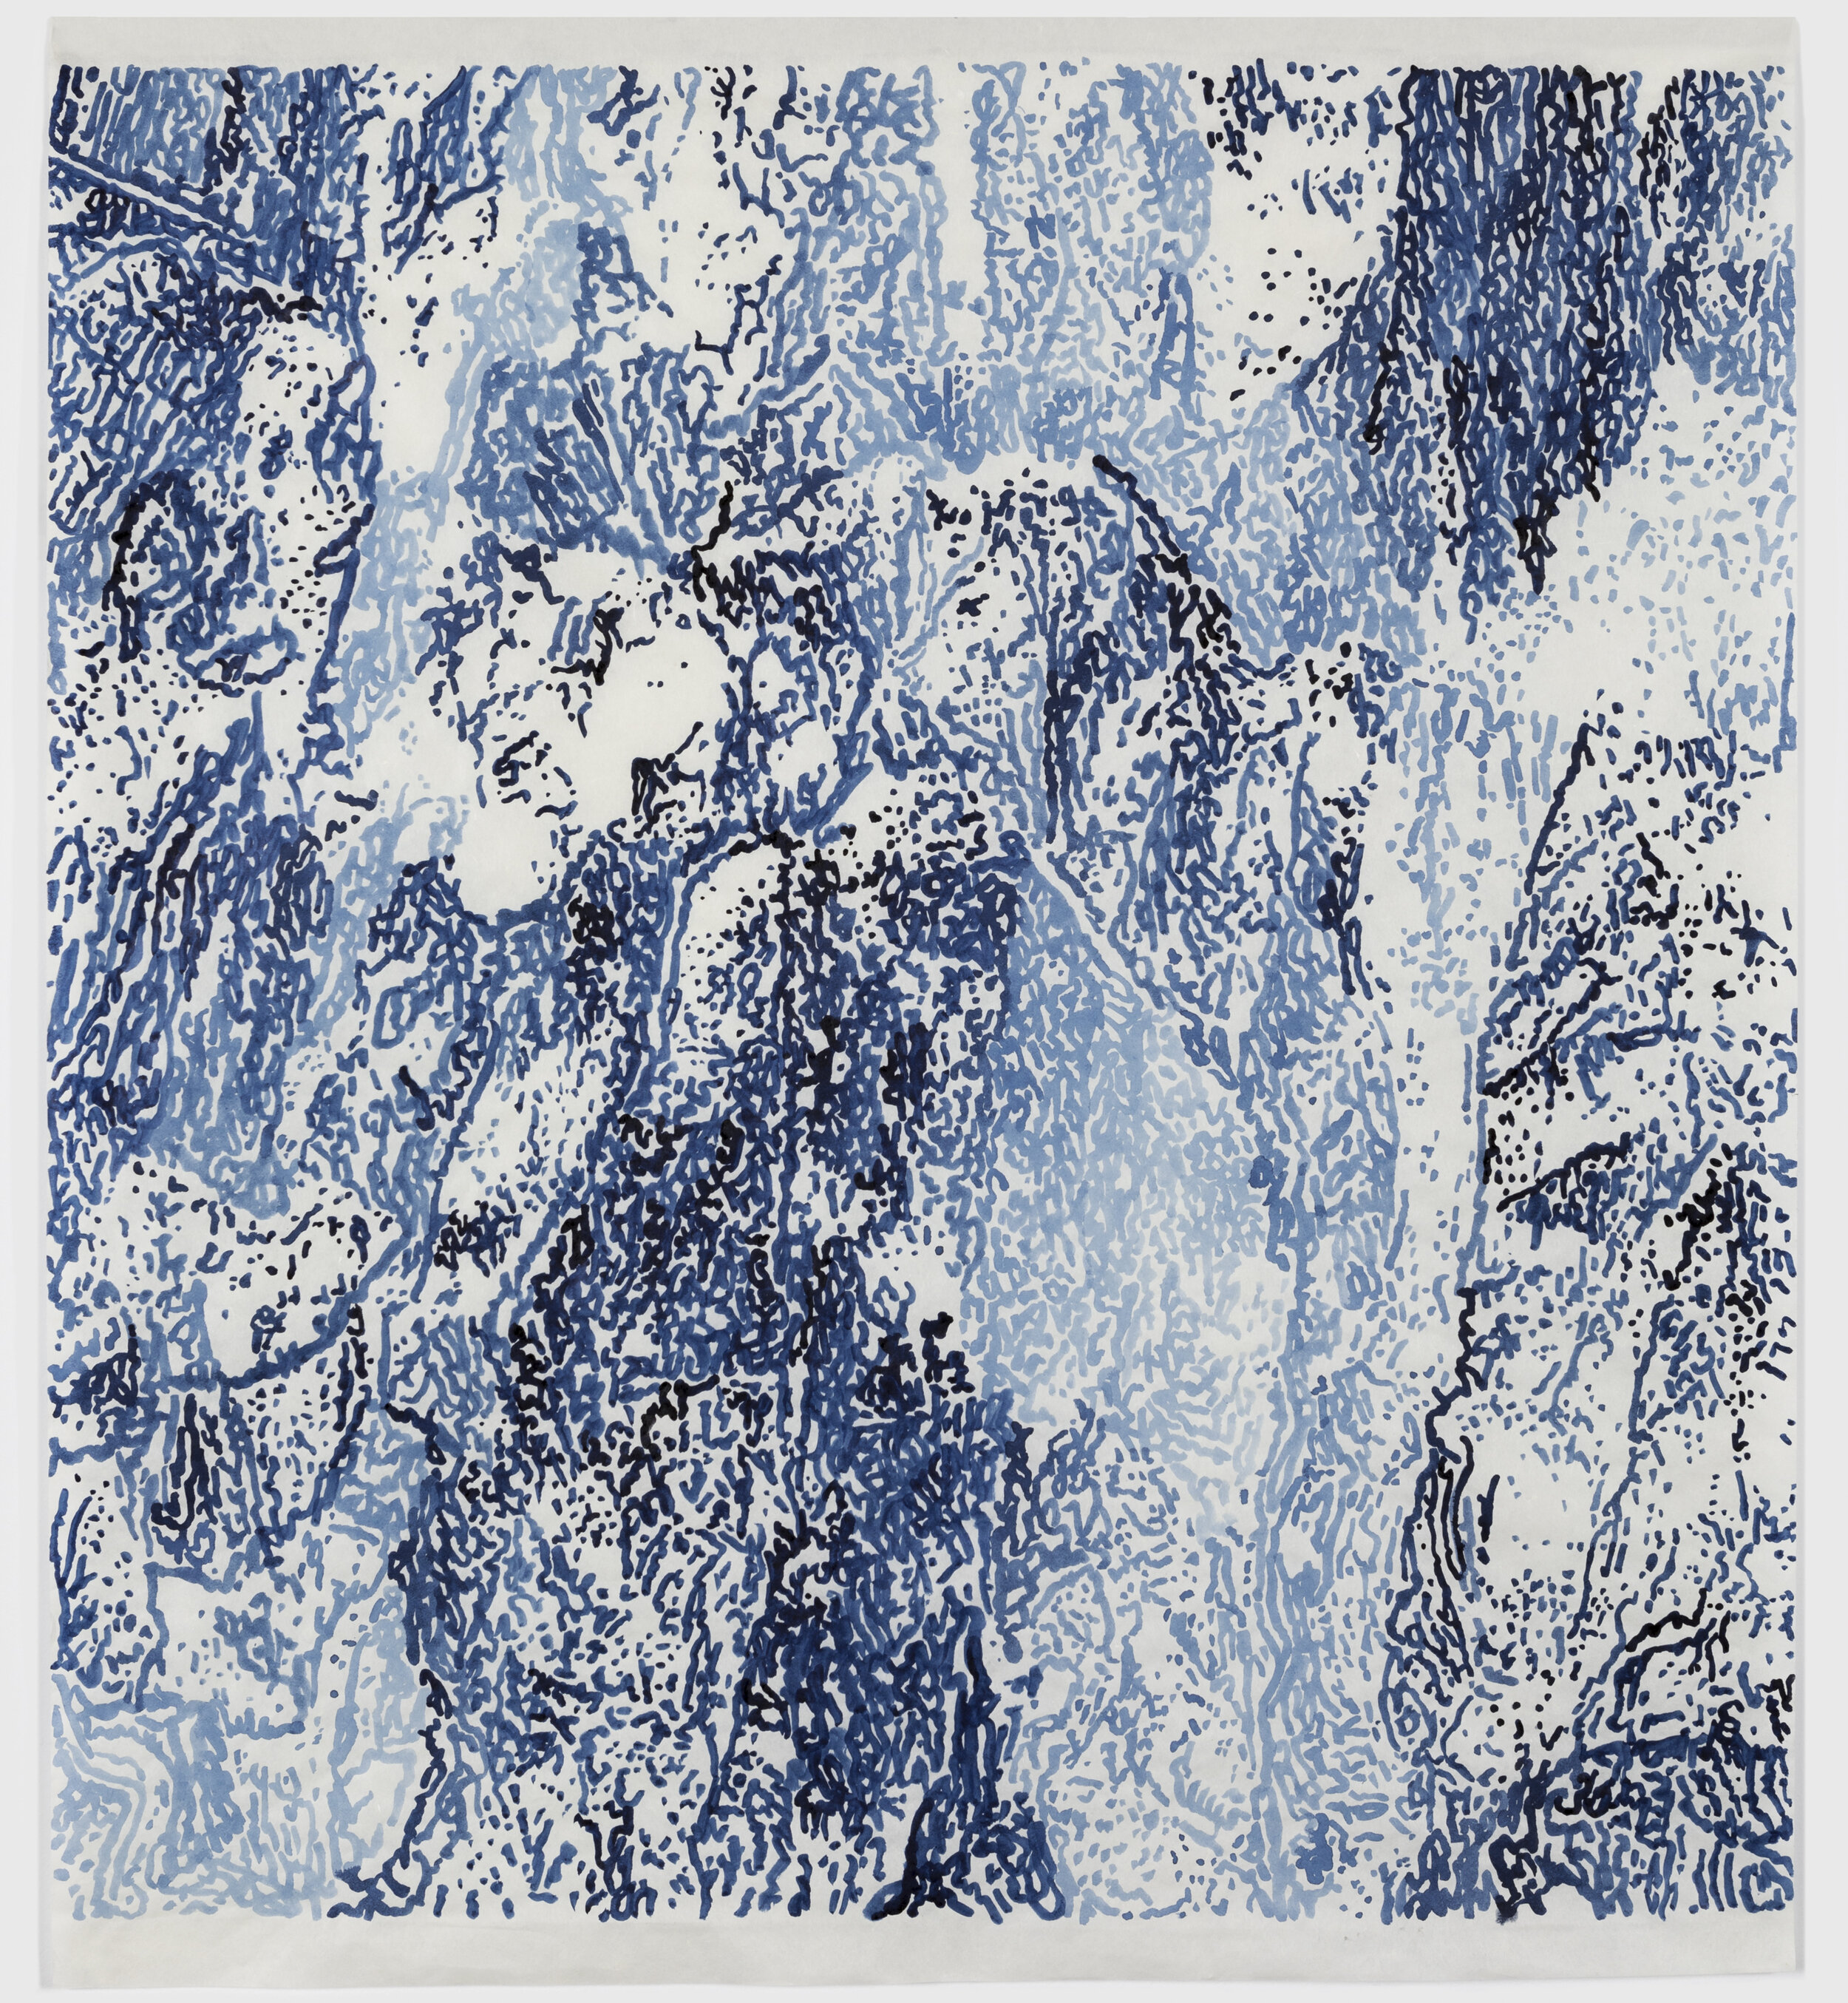    Mt Heng, Shanxi, China,   2019 Indigo ink on Japanese  kozo-shi paper, 38” x 28”  